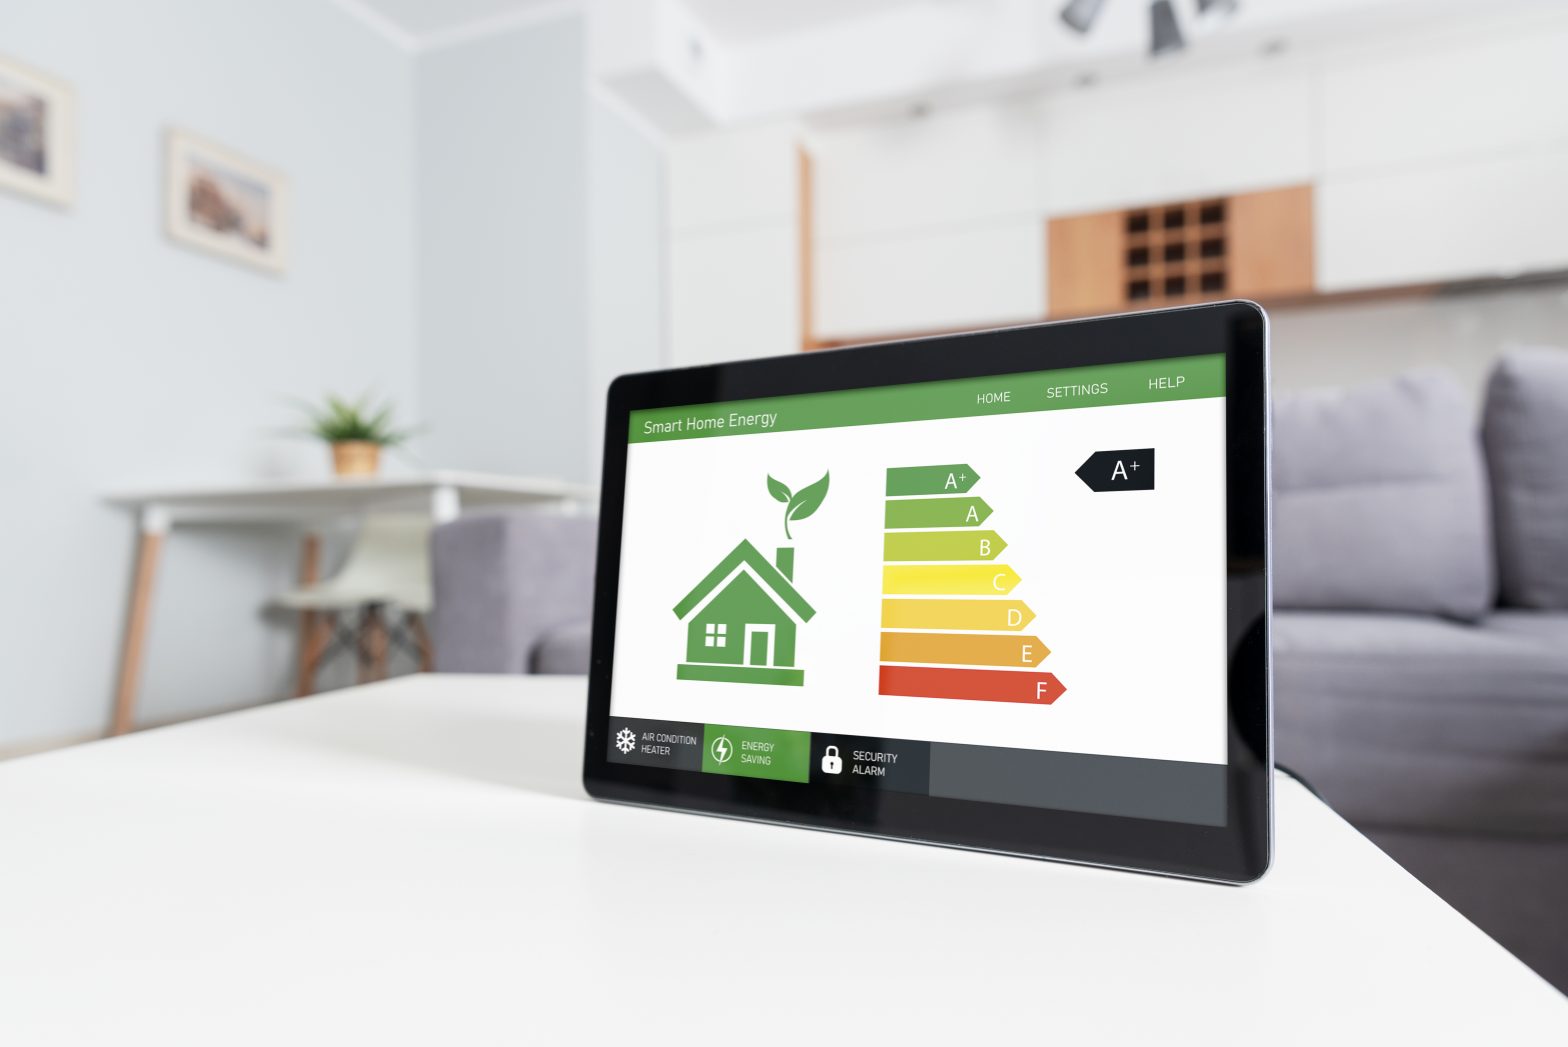 Energy efficiency mobile app on screen.